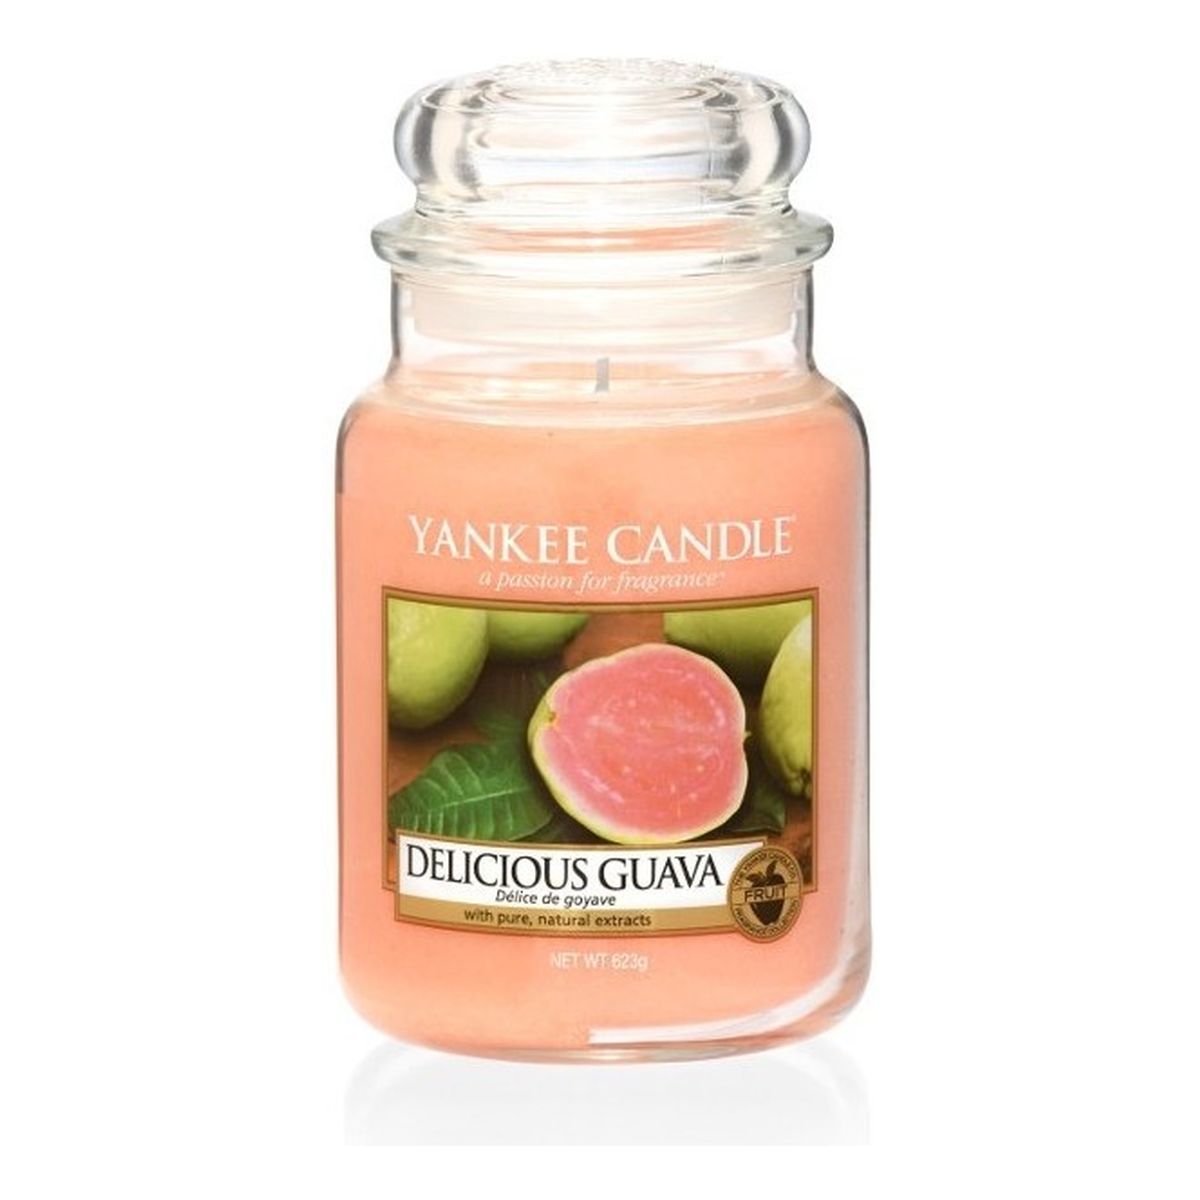 Yankee Candle Large Jar Duża świeczka zapachowa Delicious Guava 623g